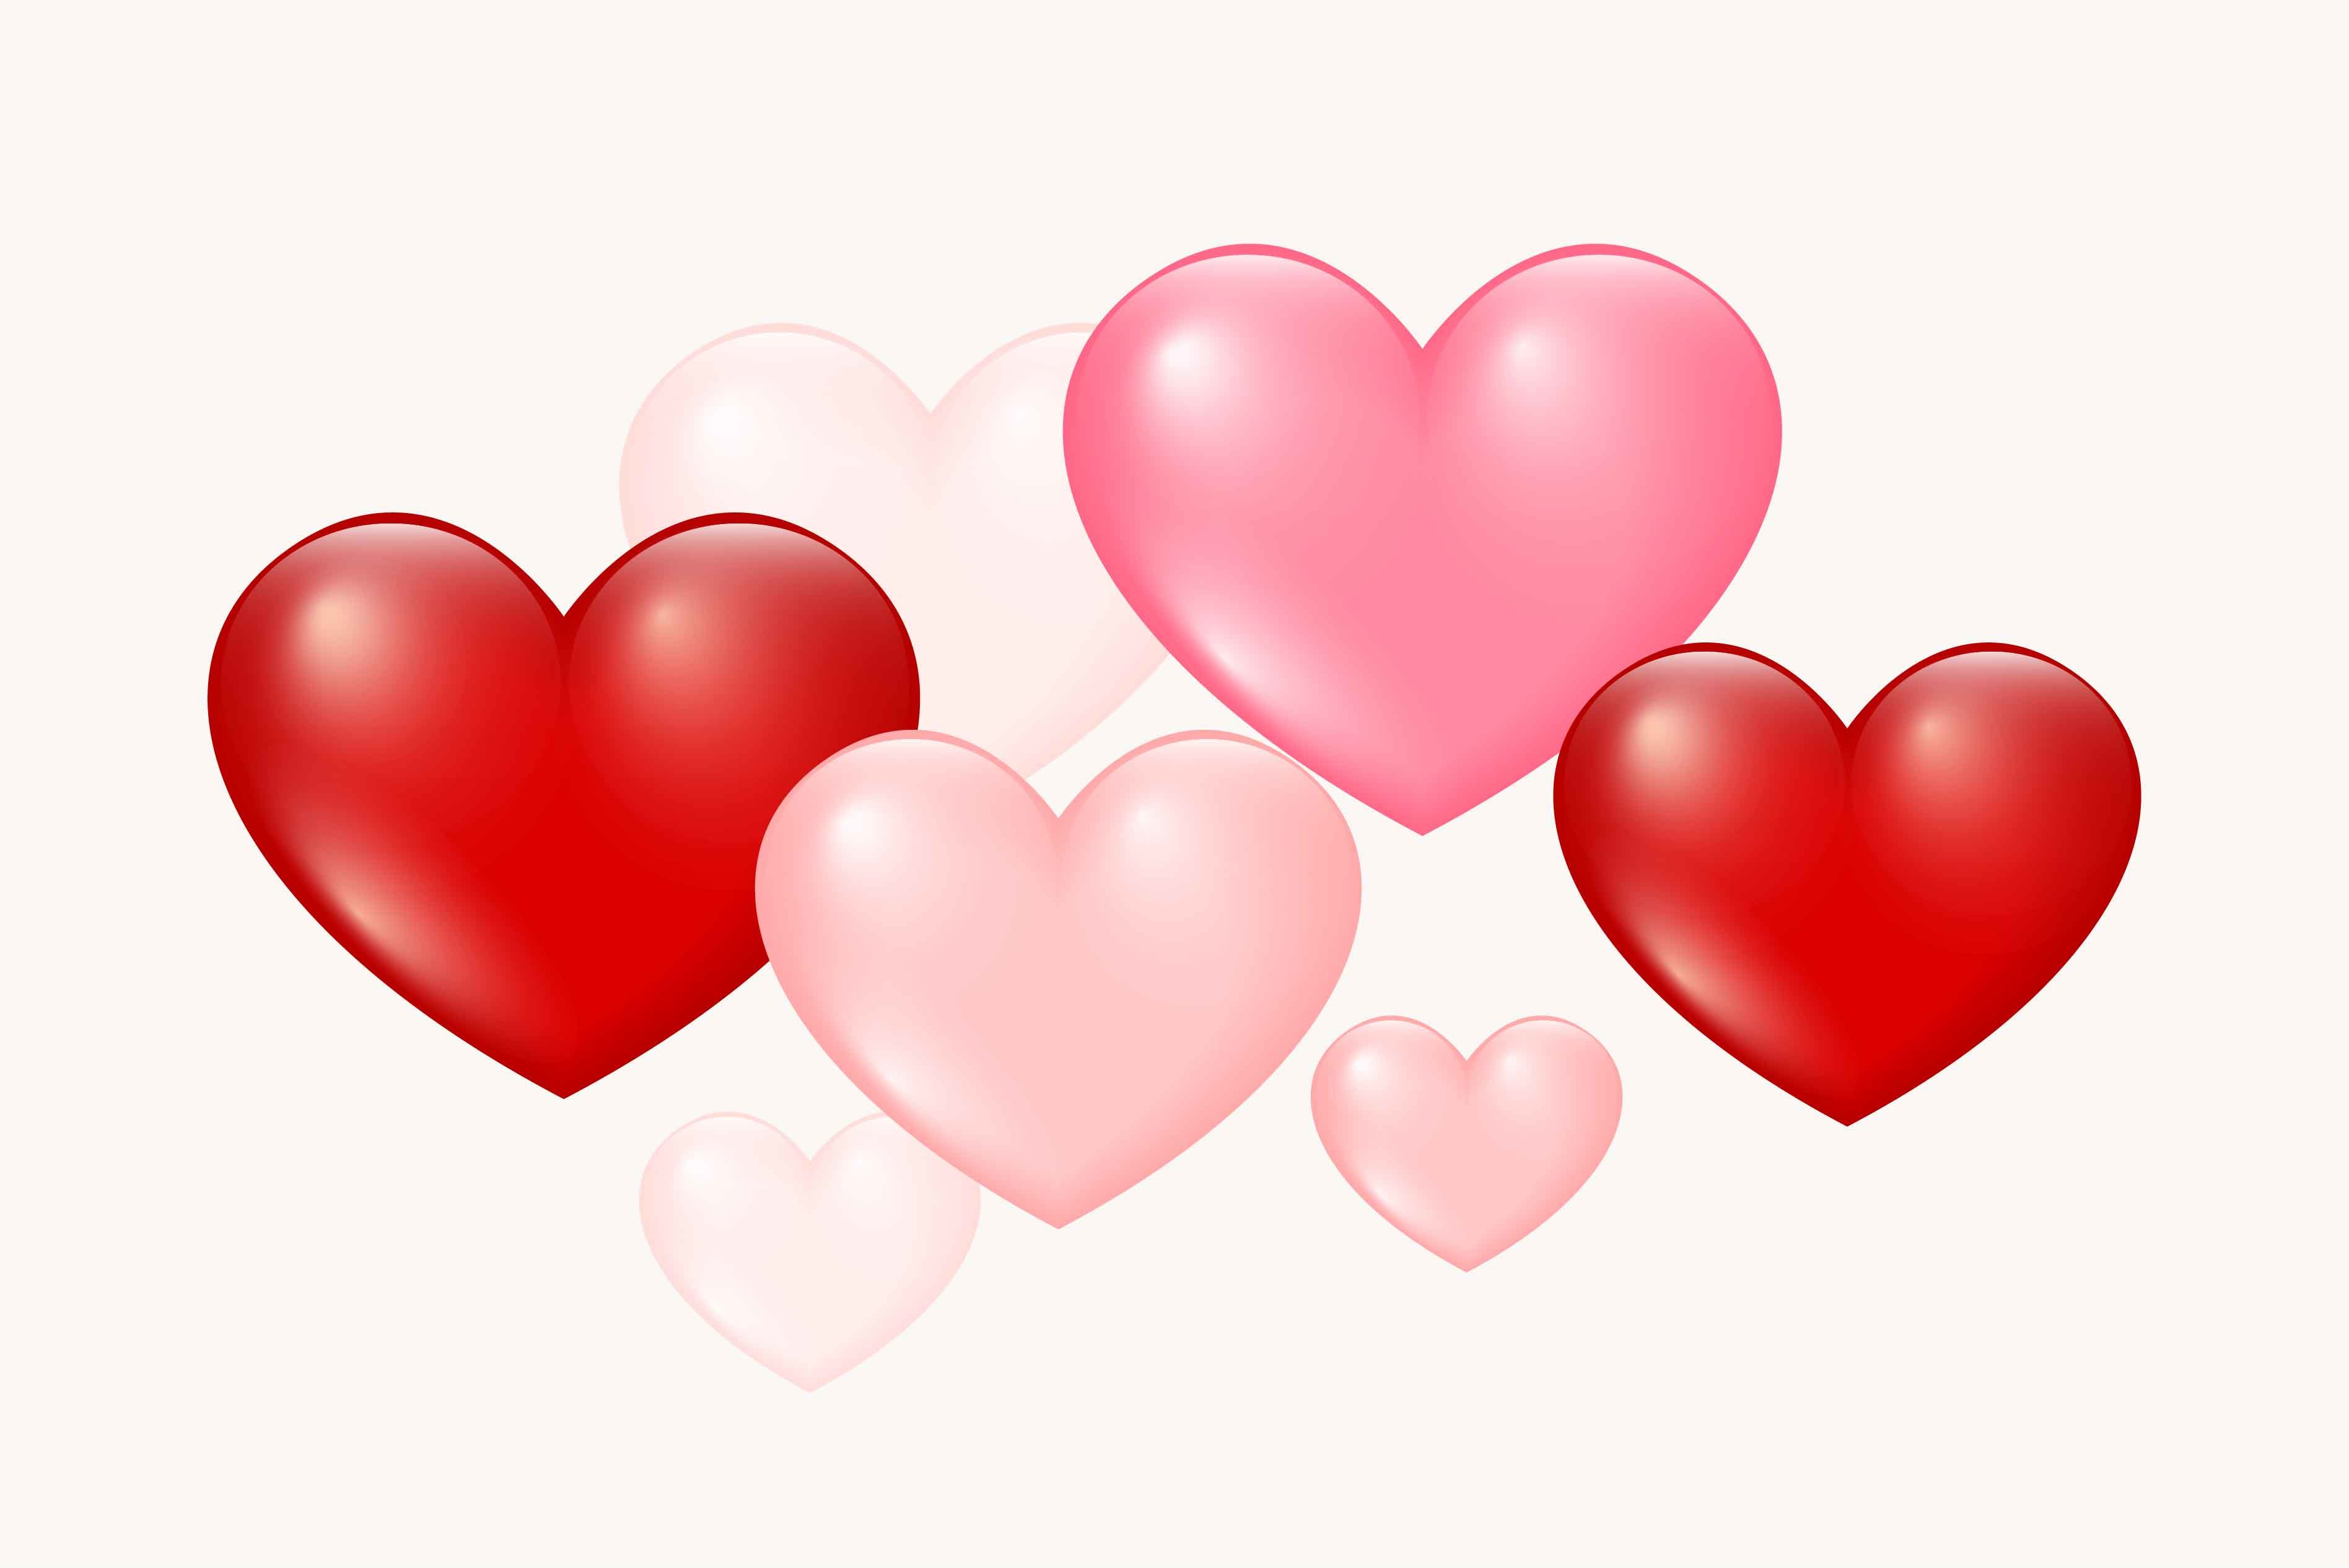 I Love My Boyfriend Pink Heart Svg Graphic by ElementDesignAndArt